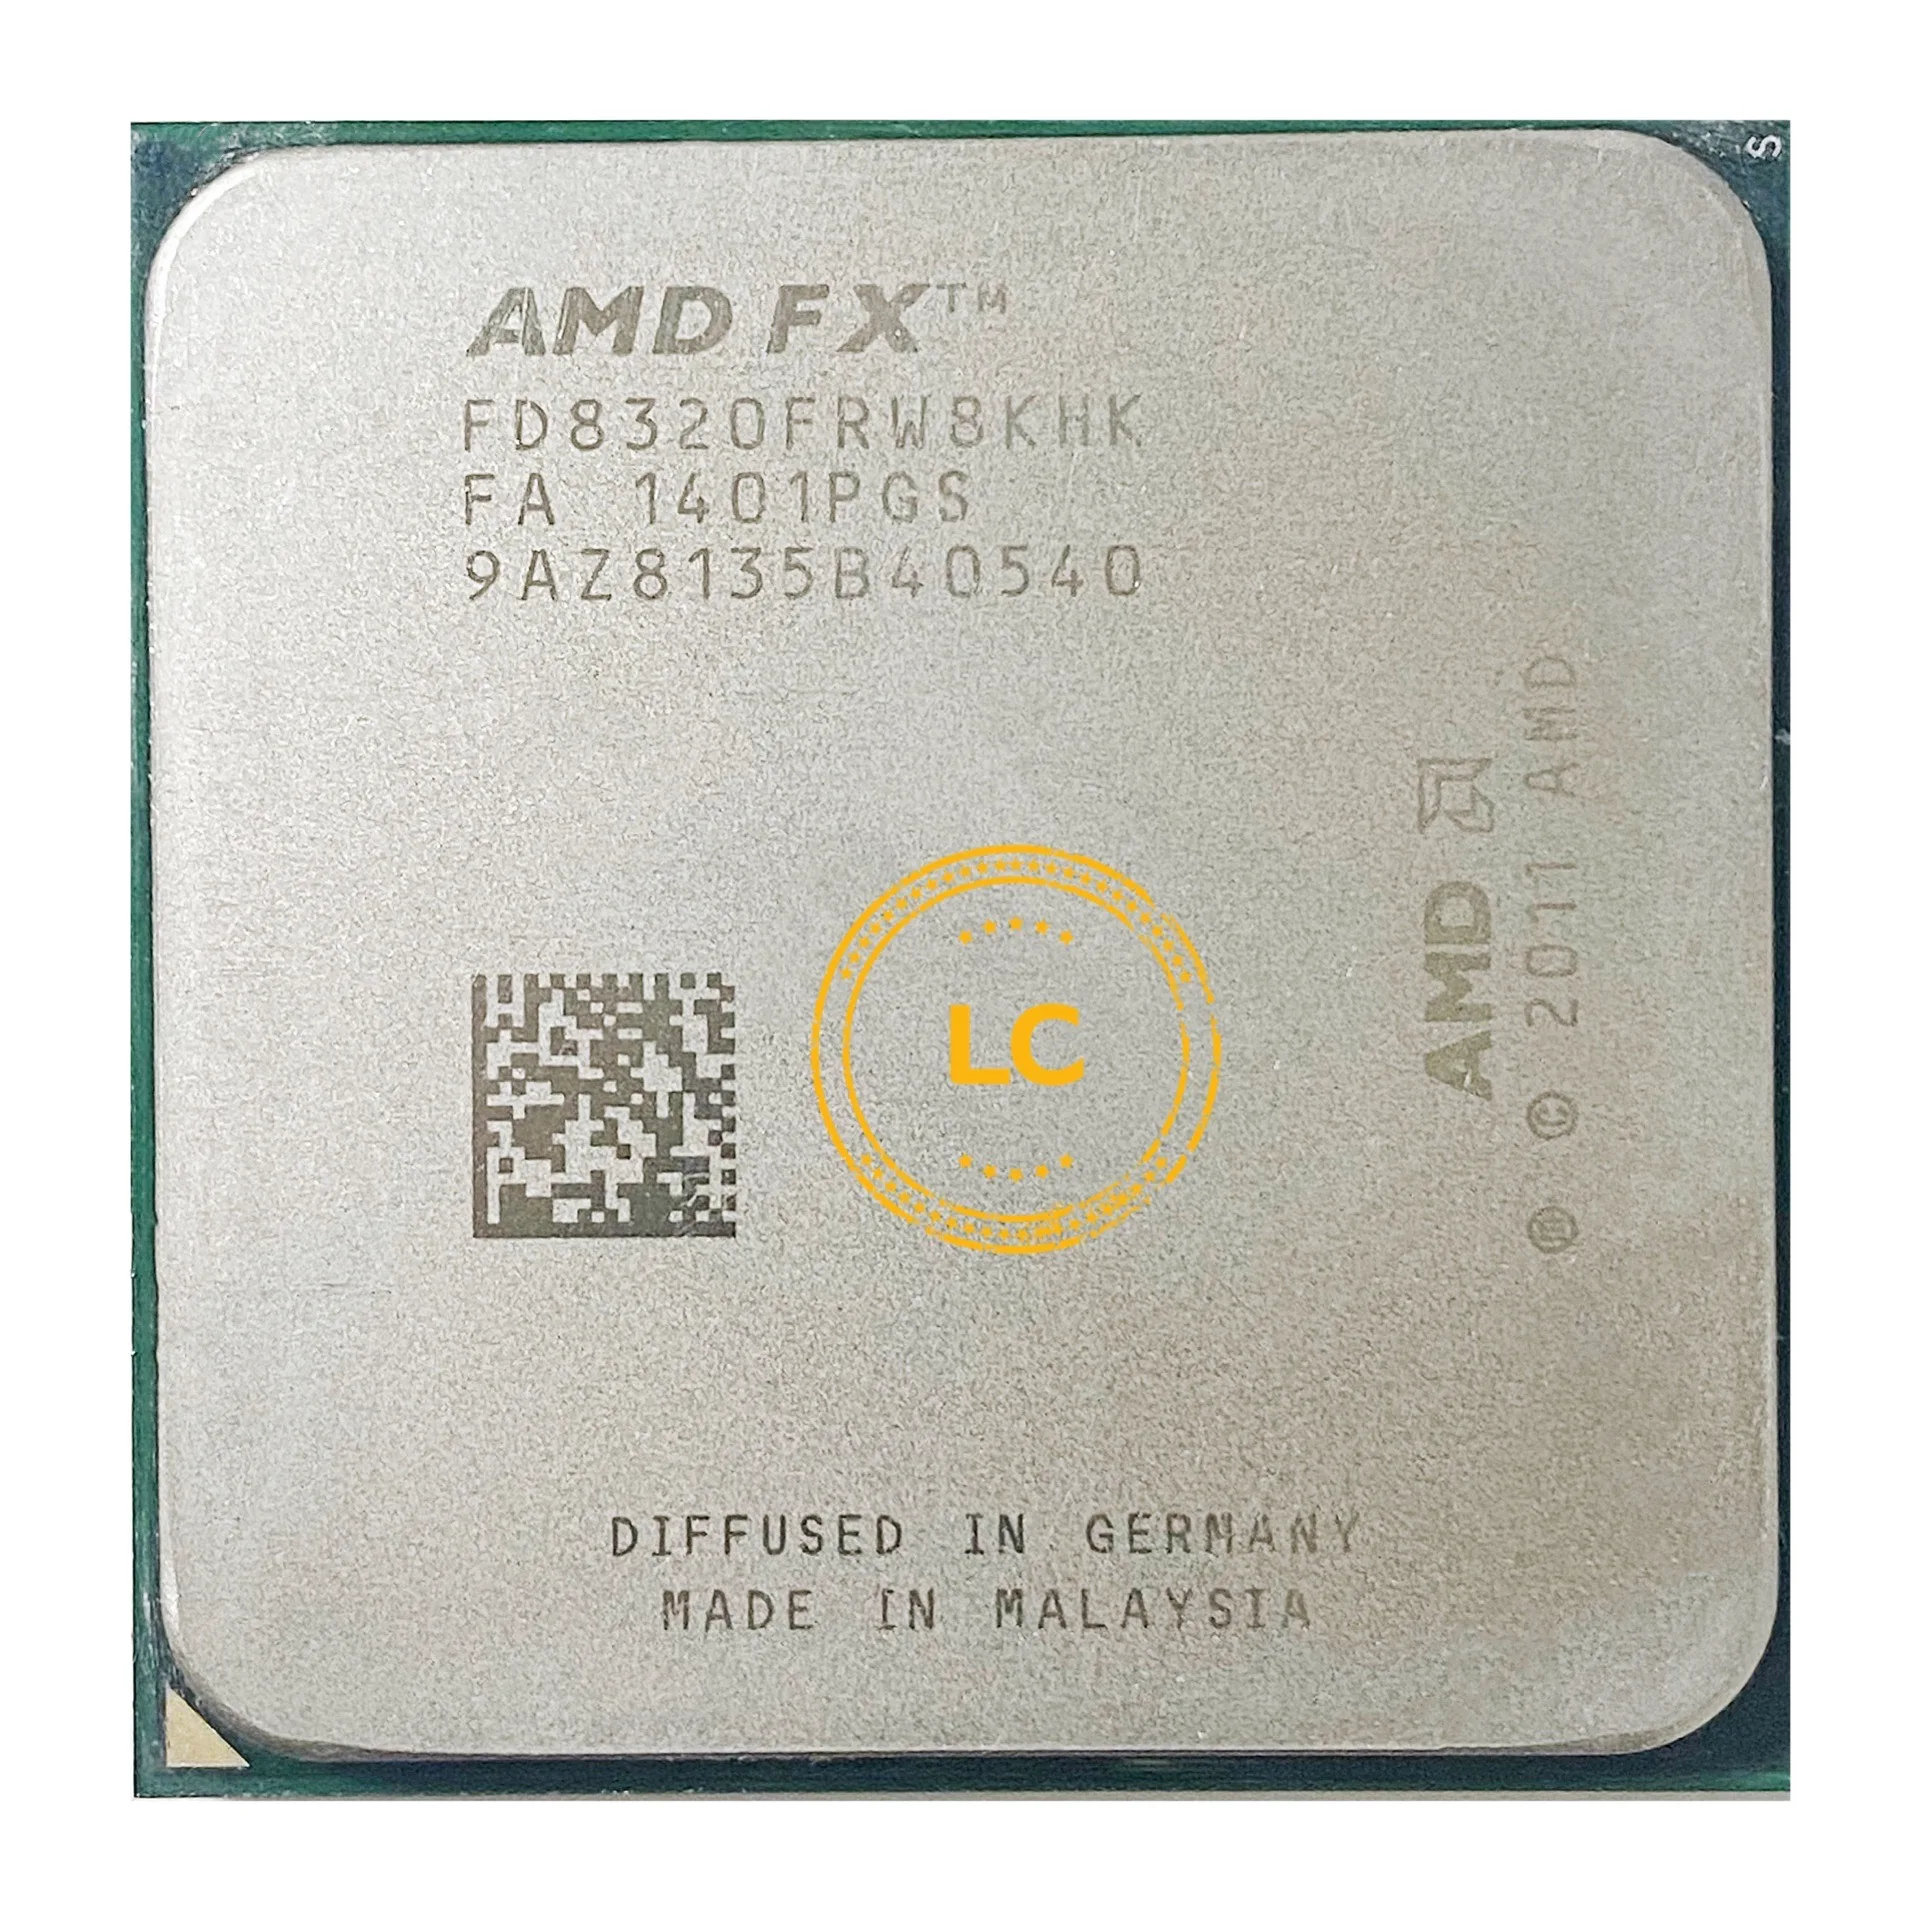 

AMD FX-Series FX8320 FX 8320 3.5 GHz Eight-Core CPU Processor FD8320FRW8KHK Socket AM3+